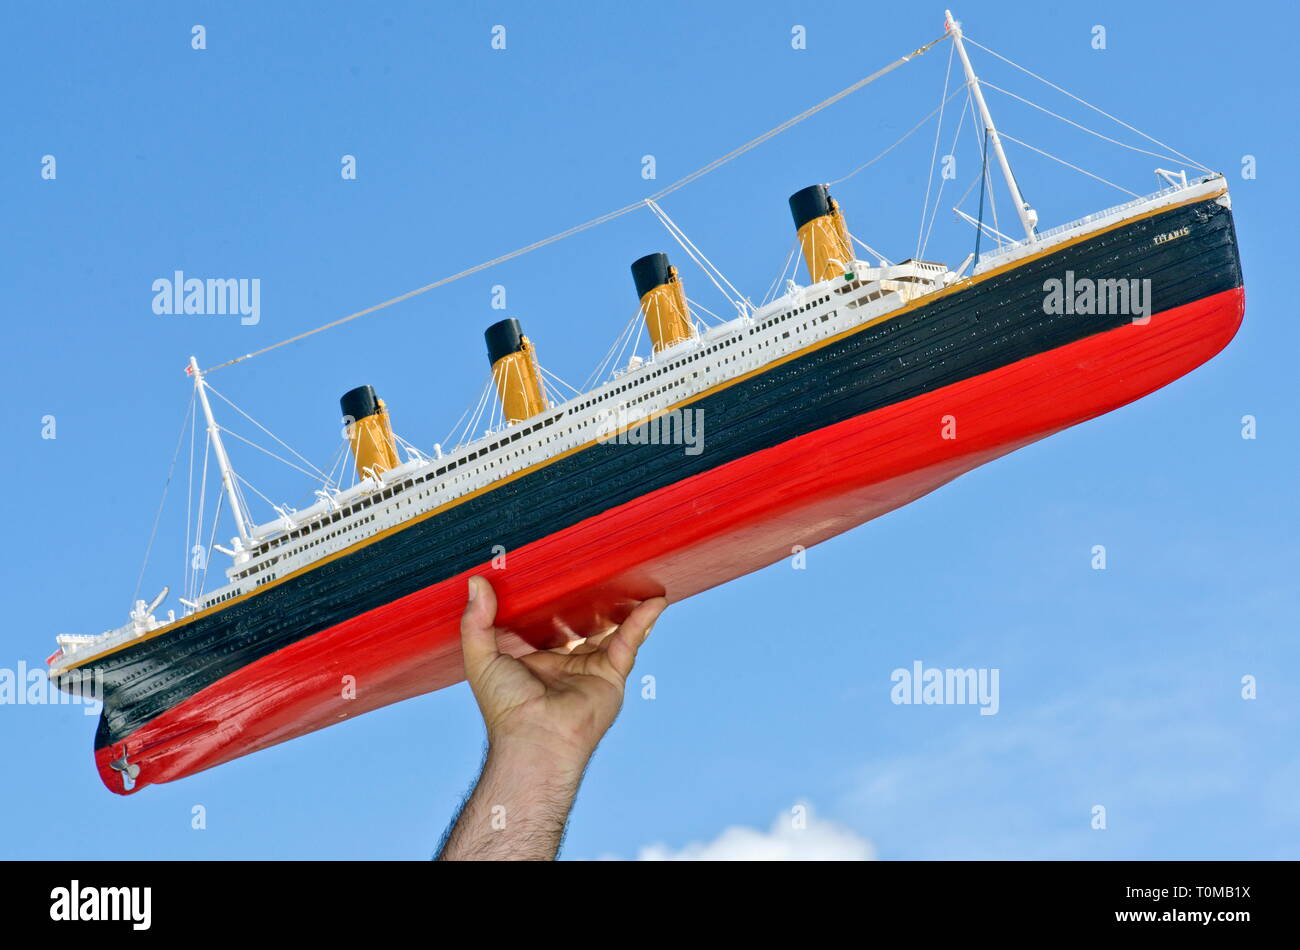 Spielzeug, Titanic, Schiffsmodell, wiedergegeben in Faksimile, ca. 1 m lang, Schiff, Aufrechterhaltung, Deutschland, ca. 1985, Additional-Rights - Clearance-Info - Not-Available Stockfoto